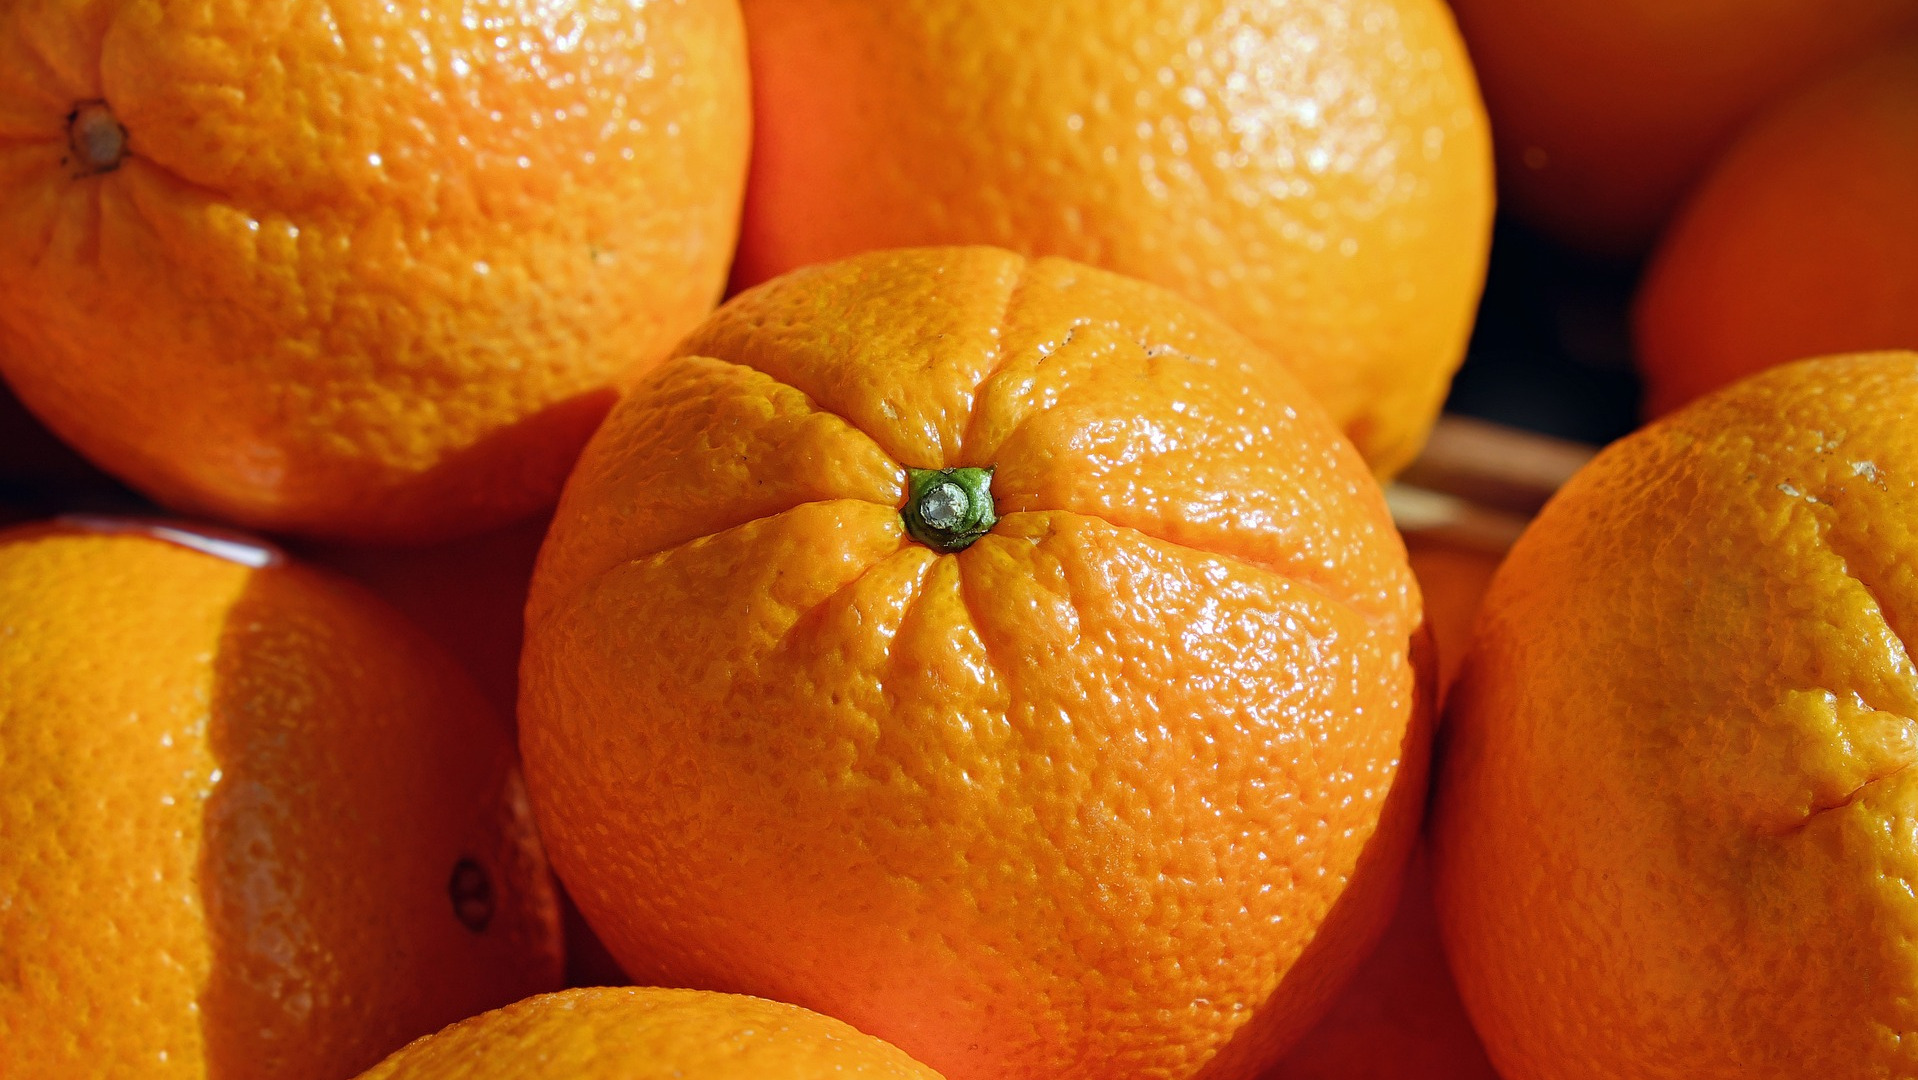 Fresh Oranges used to make Orange Essential Oil